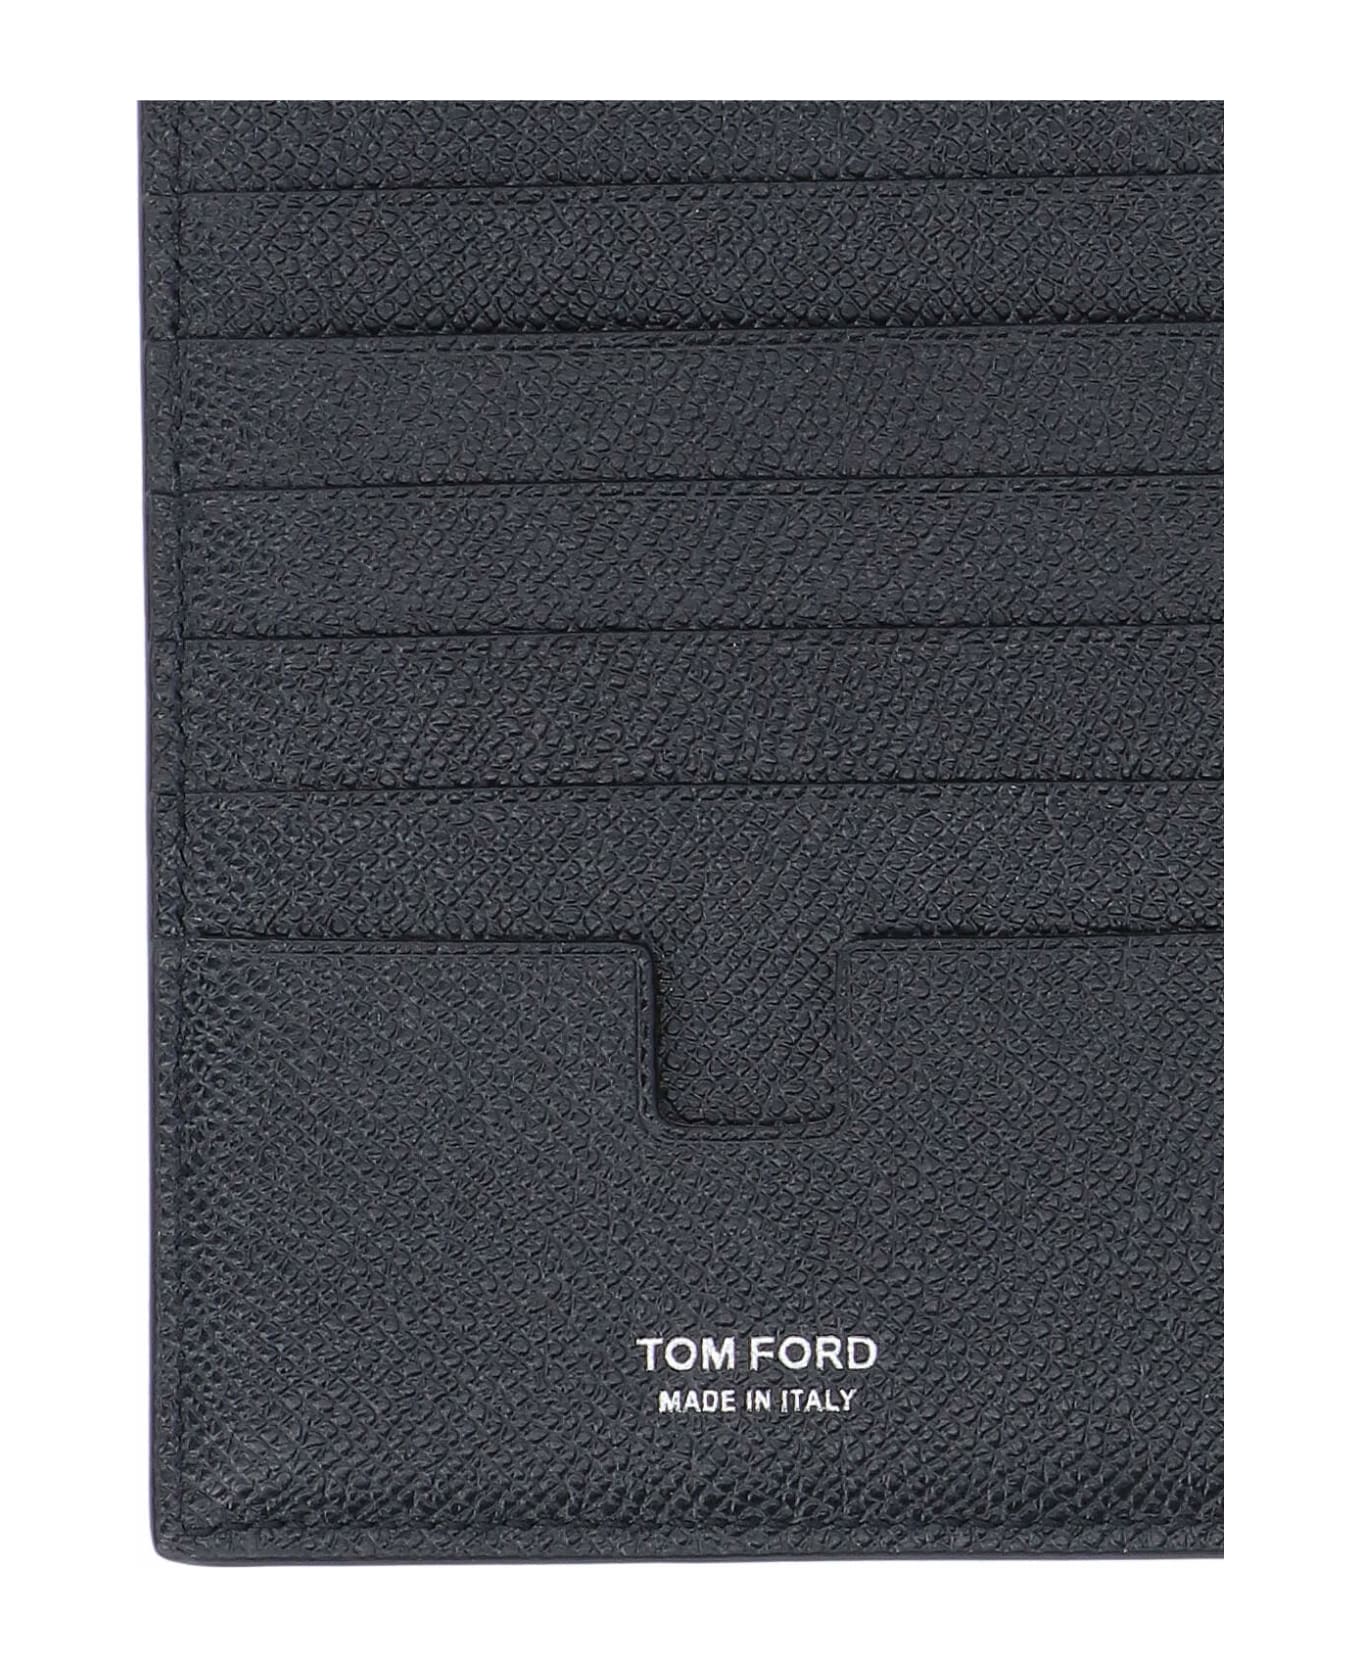 Tom Ford Logo Card Holder - Black  